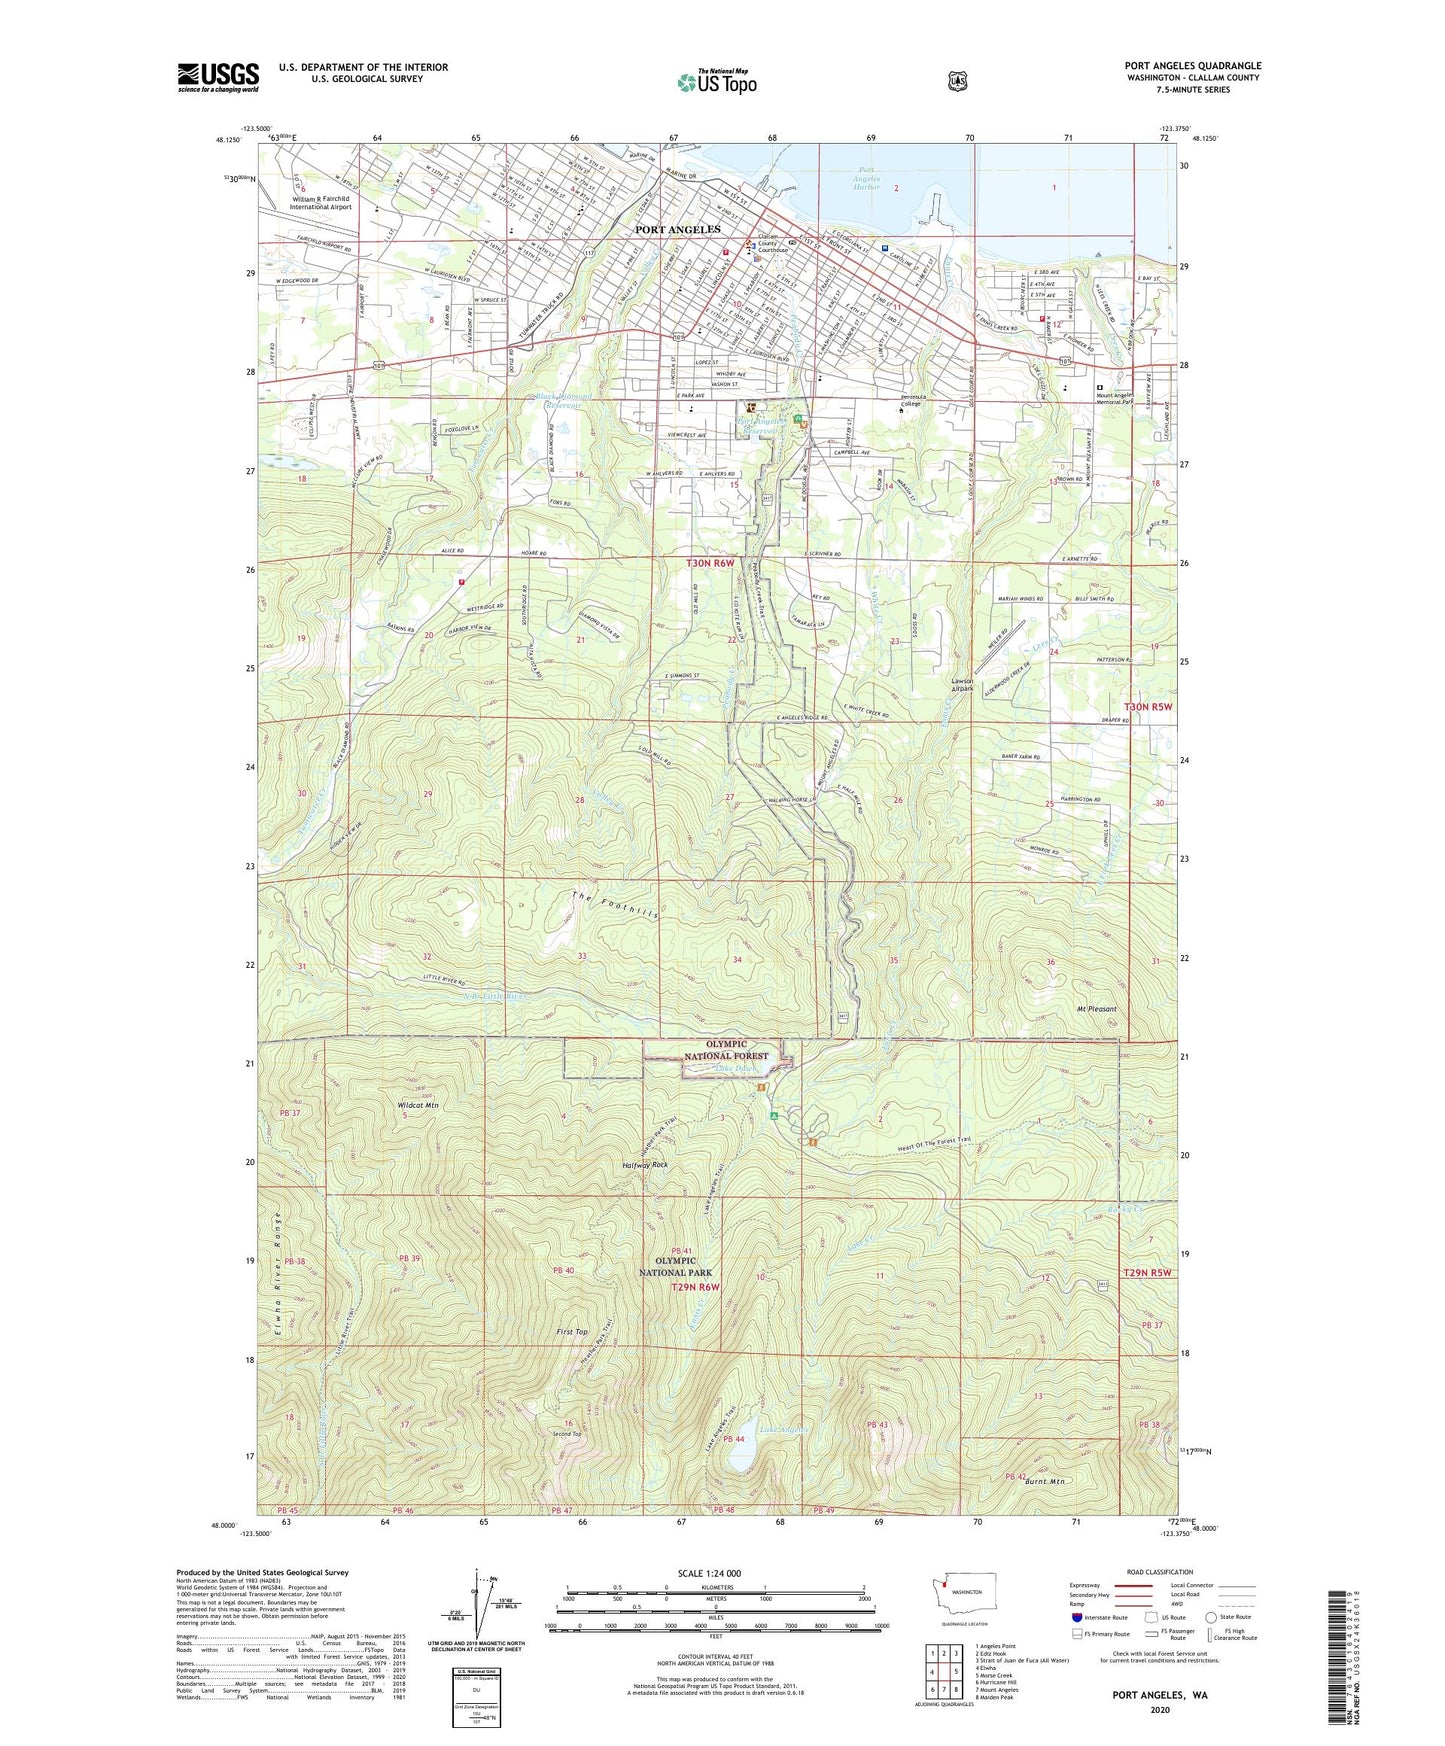 Port Angeles Washington US Topo Map Image